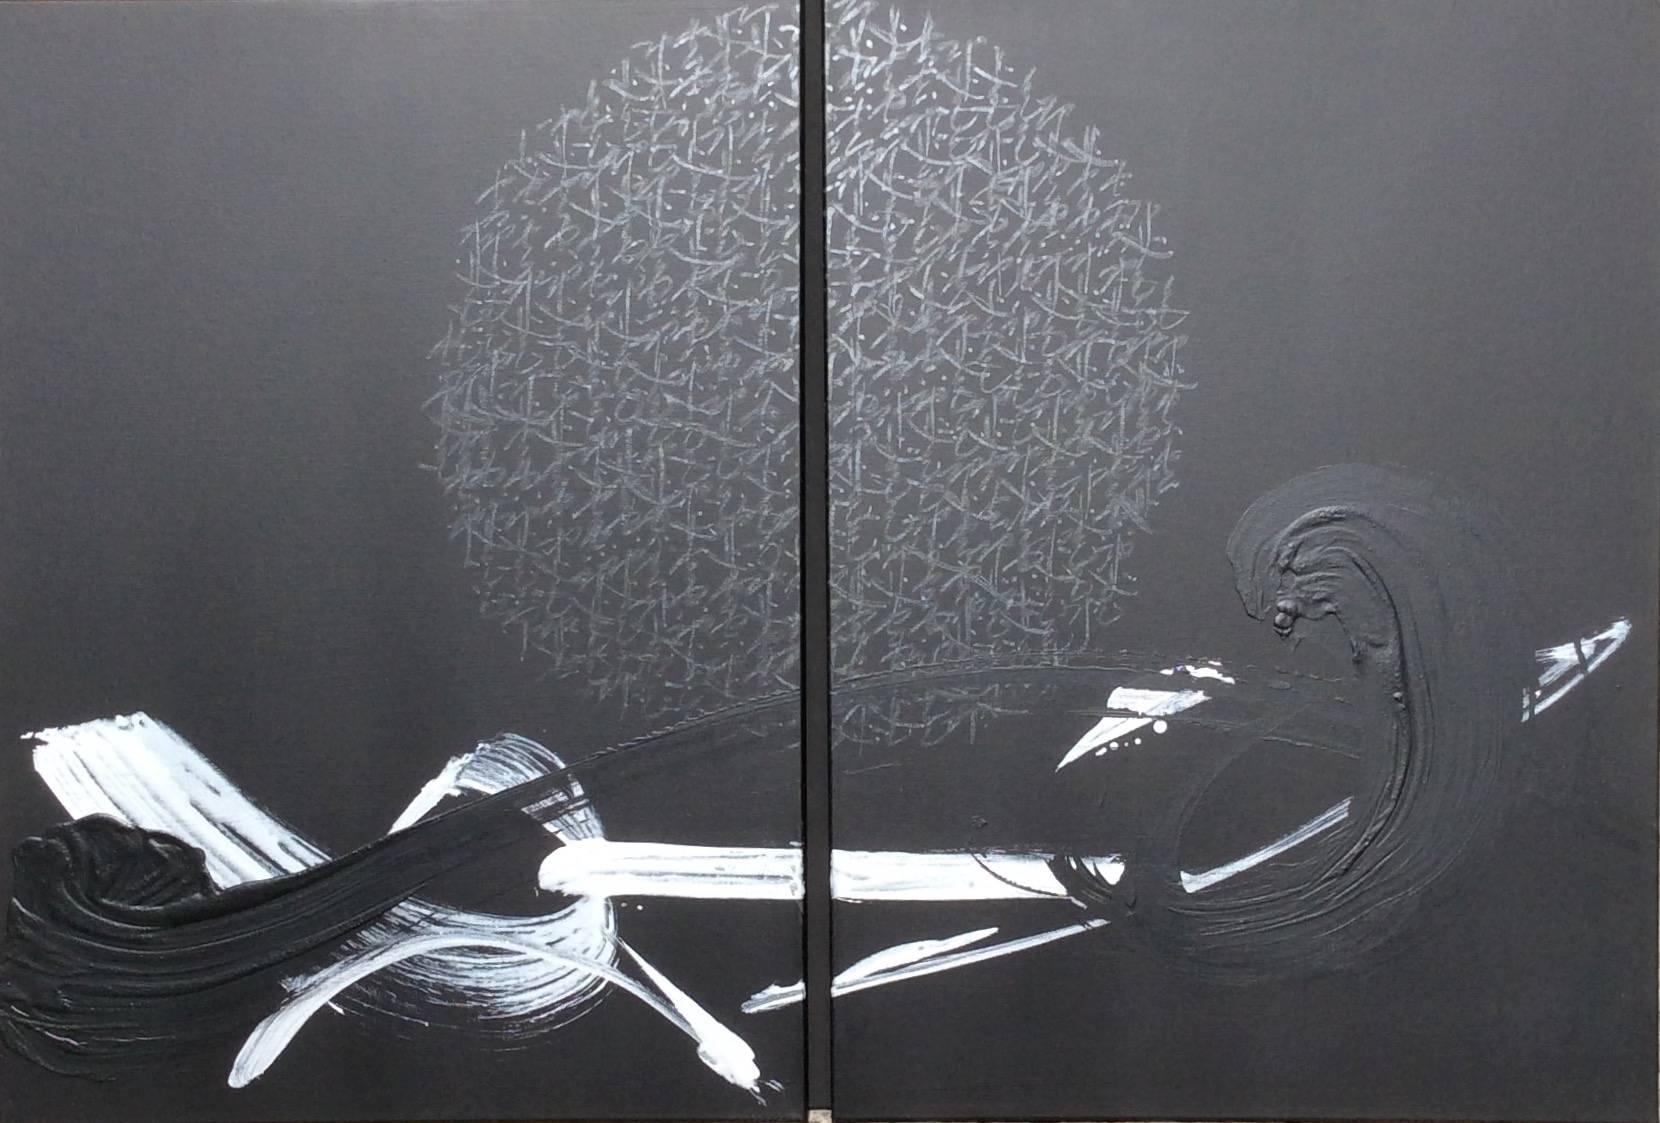 TN 683 D ist ein Diptychon des japanischen zeitgenössischen Künstlers Hachiro Kanno, das aus zwei 100 x 73 großen Tafeln besteht. Tusche und Acryl auf Leinwand, 100 cm x 146 cm. Wird ungerahmt verkauft.
Der Maler schöpft seine Ressourcen aus der